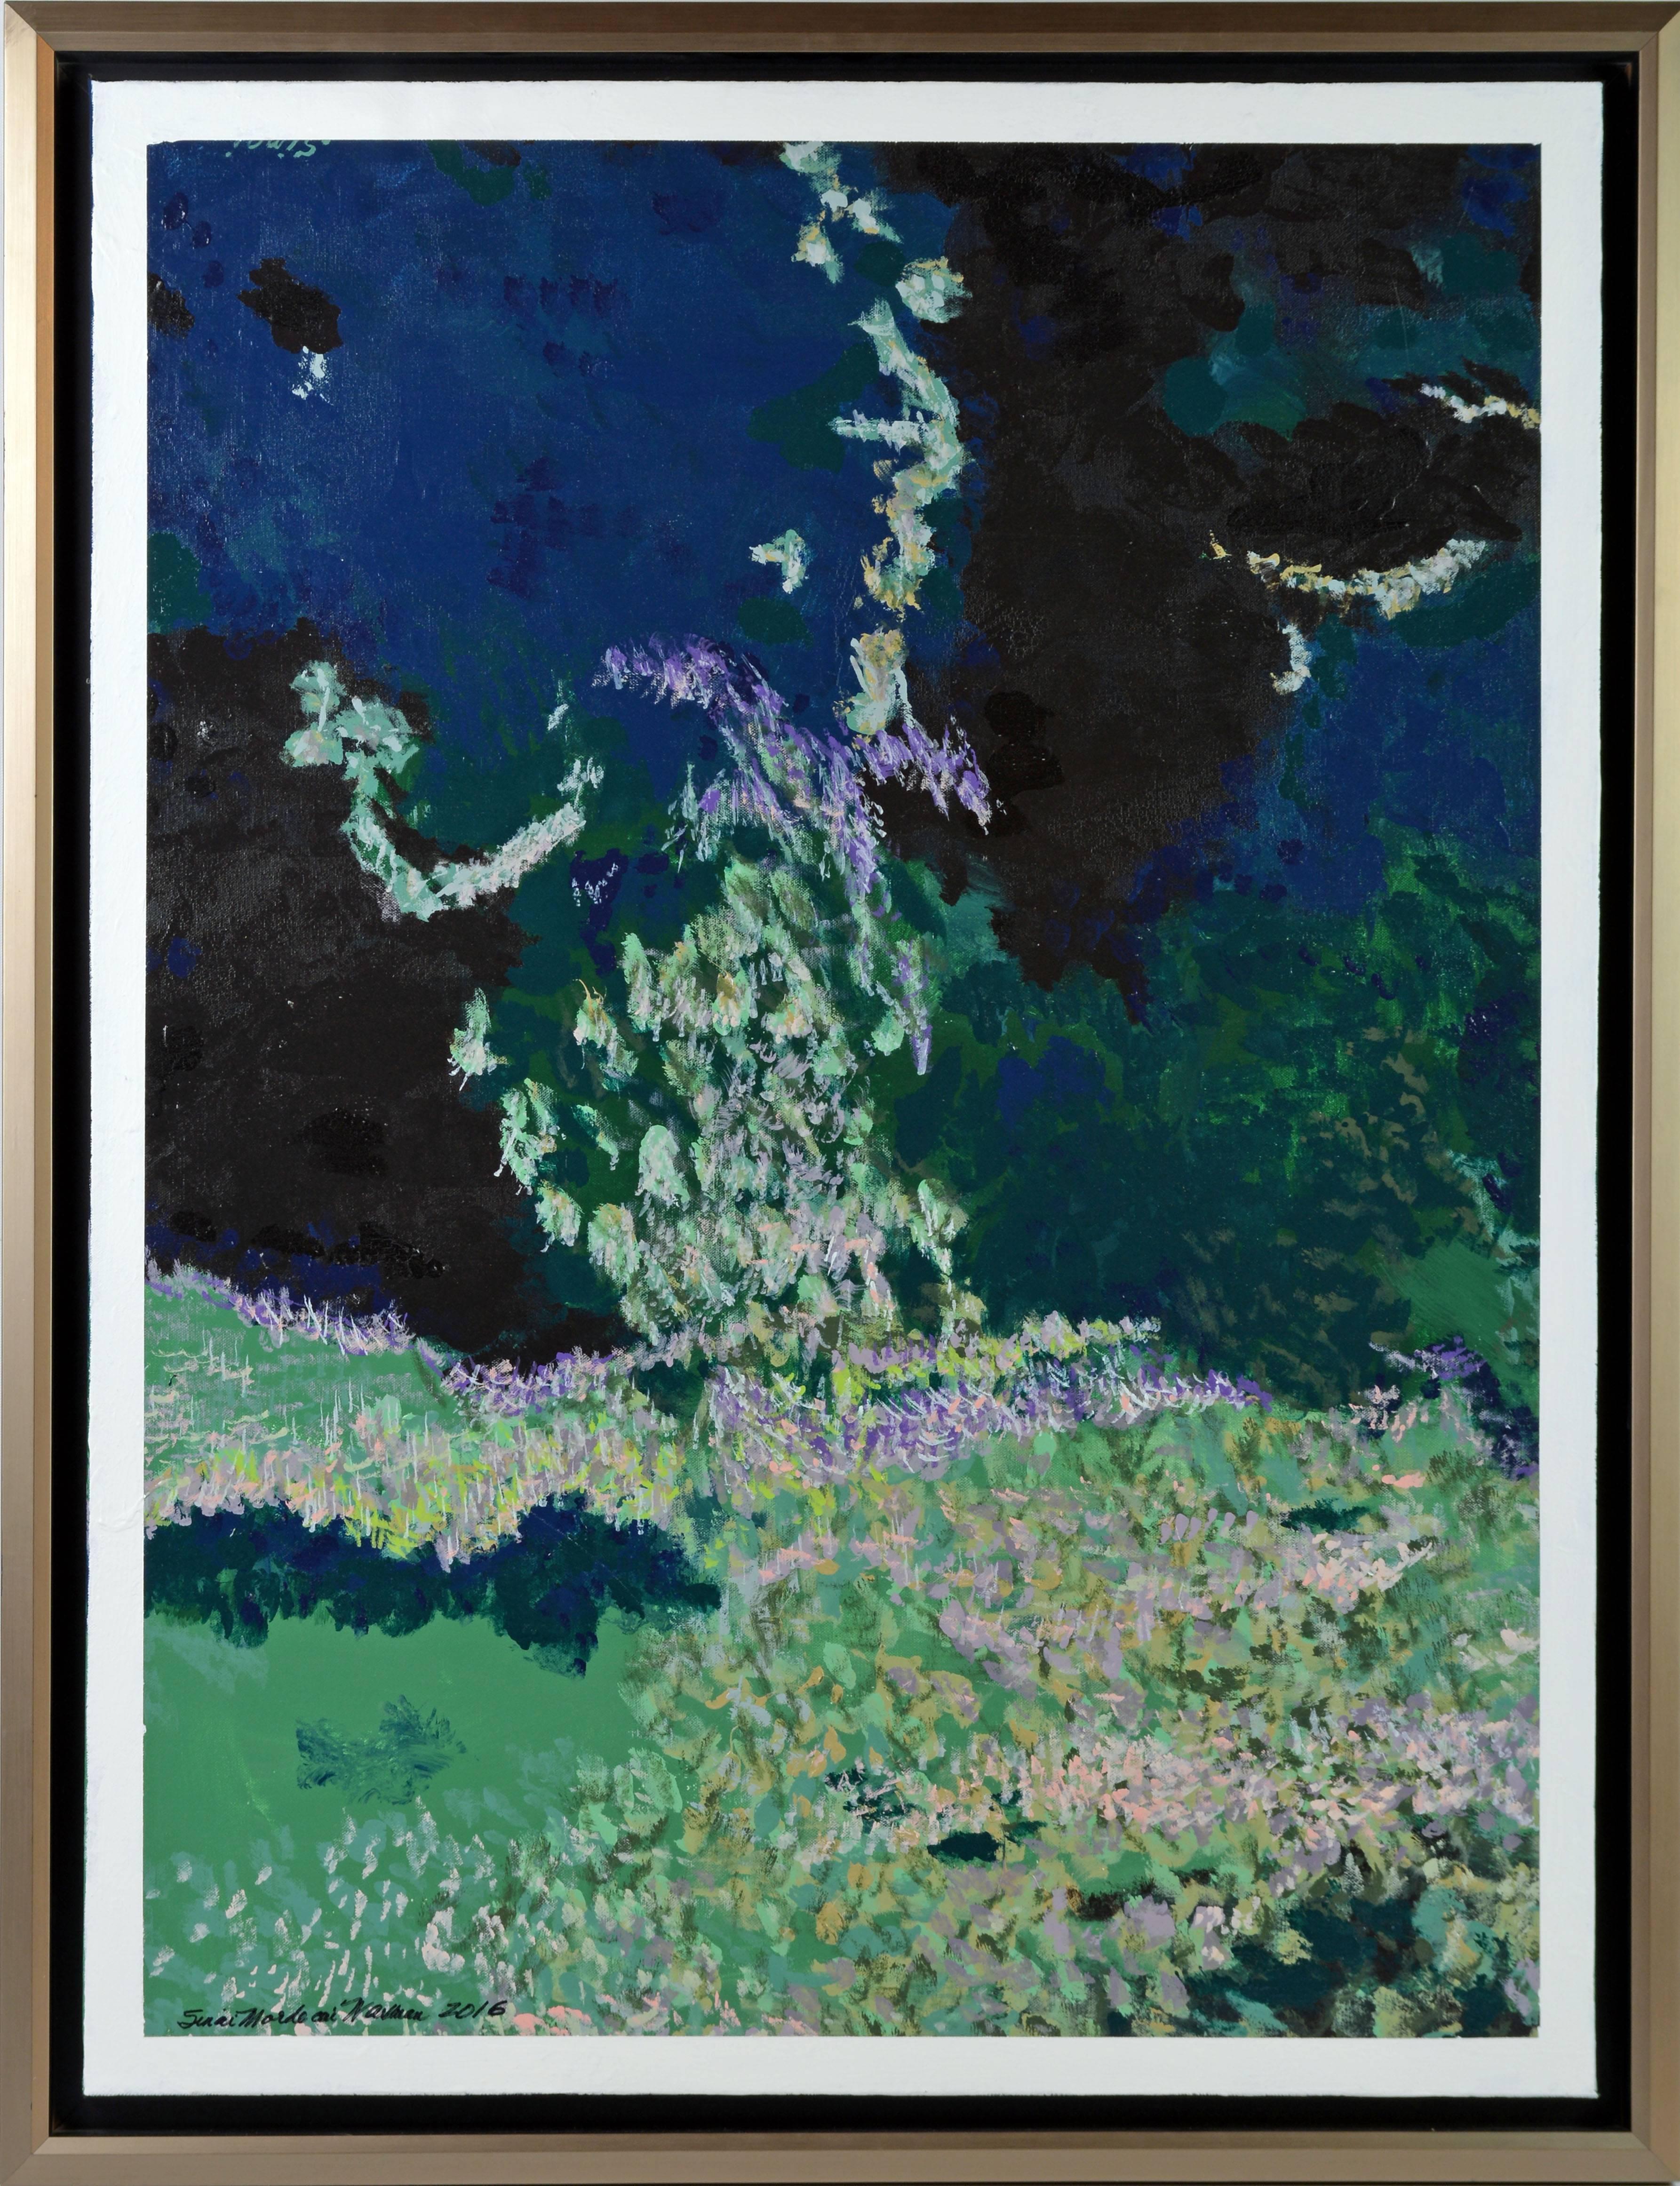 côte Atlantique
par Sinai Mordecai Waxman, Américain, 20e siècle
Acrylique sur toile, 30 x 40 in. sans cadre, 35 x 45 in. avec cadre
Signé dans le coin inférieur droit
Il est logé dans un cadre flottant moderne de finition argentée.

Sinaï Mordecai